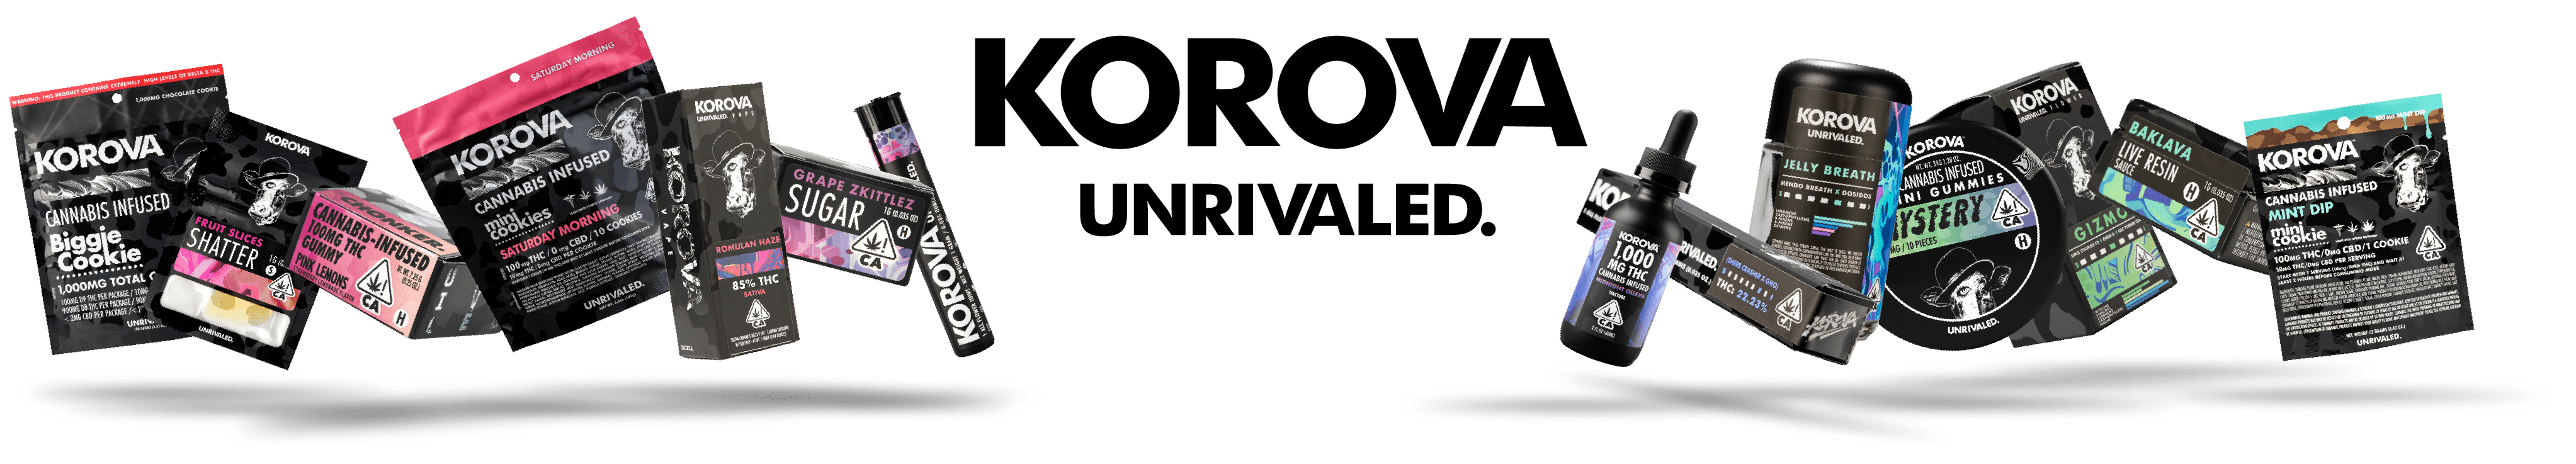 Korova banner